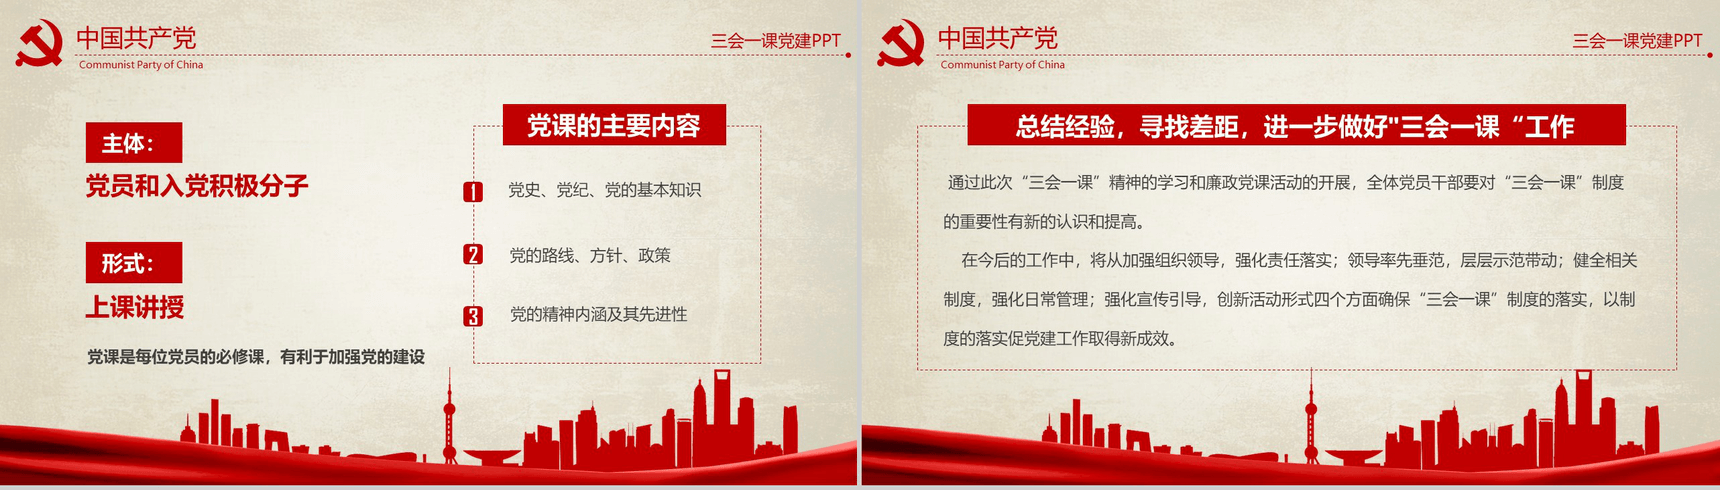 农村基层党建知识红色反腐思想指南和行动纲领学习教育PPT模板-12